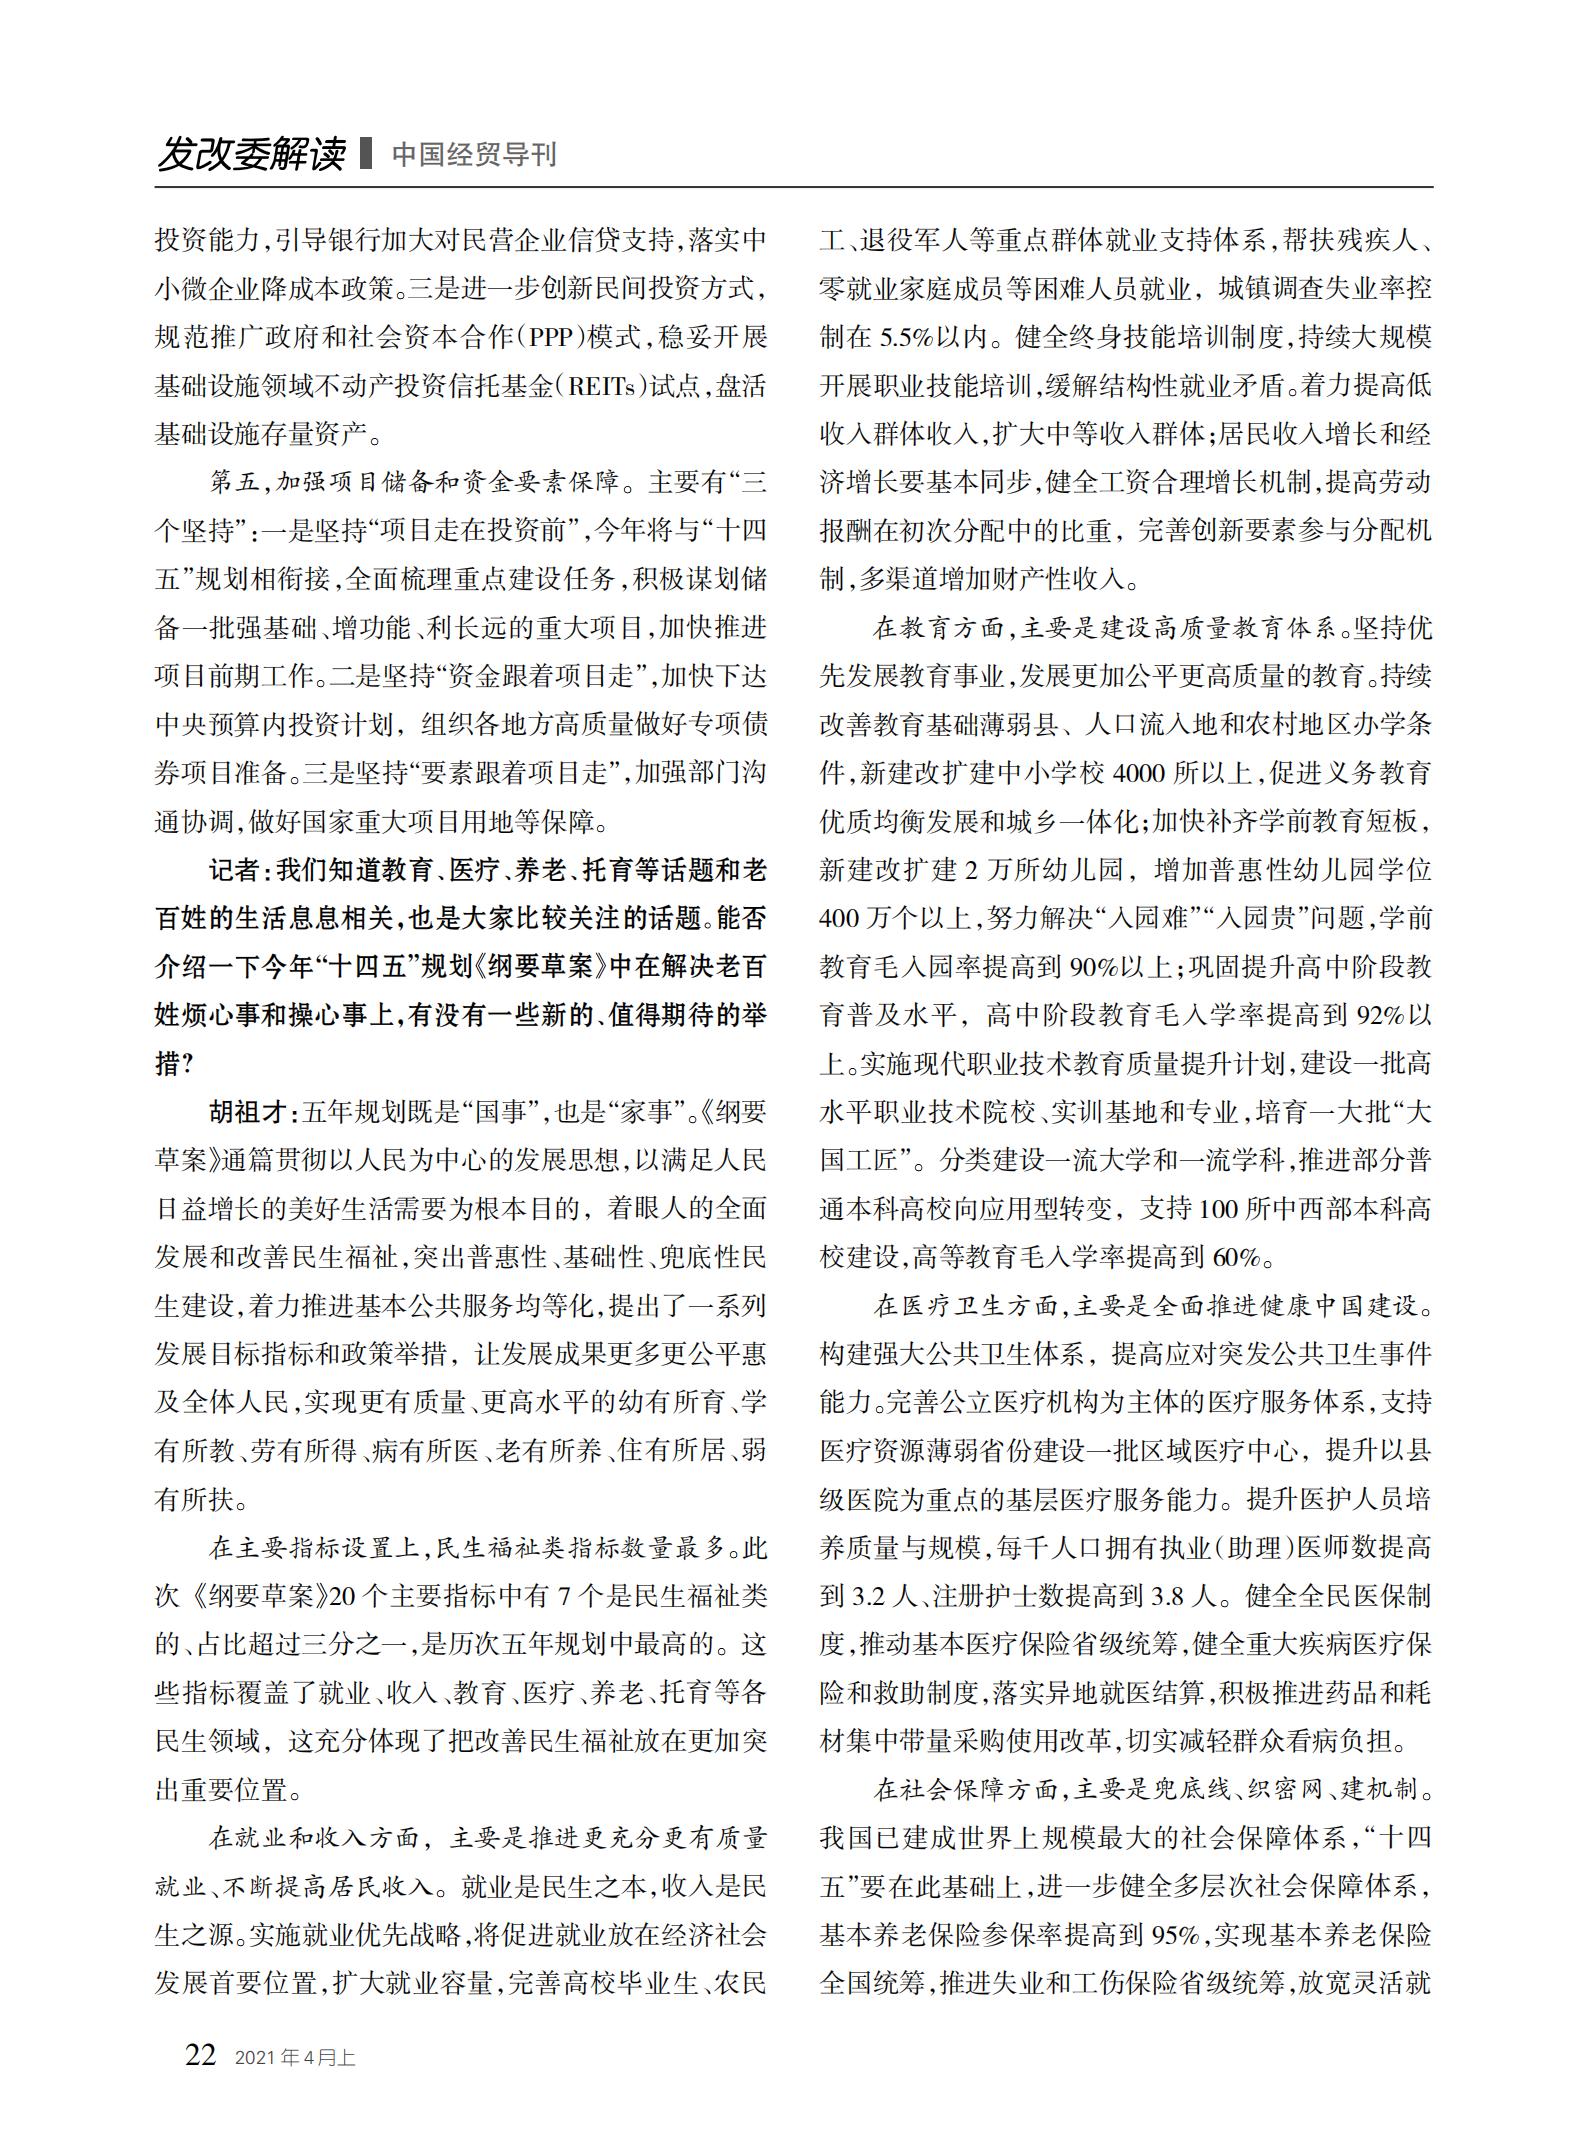 中国经贸导刊2021-4上印刷_21.jpg